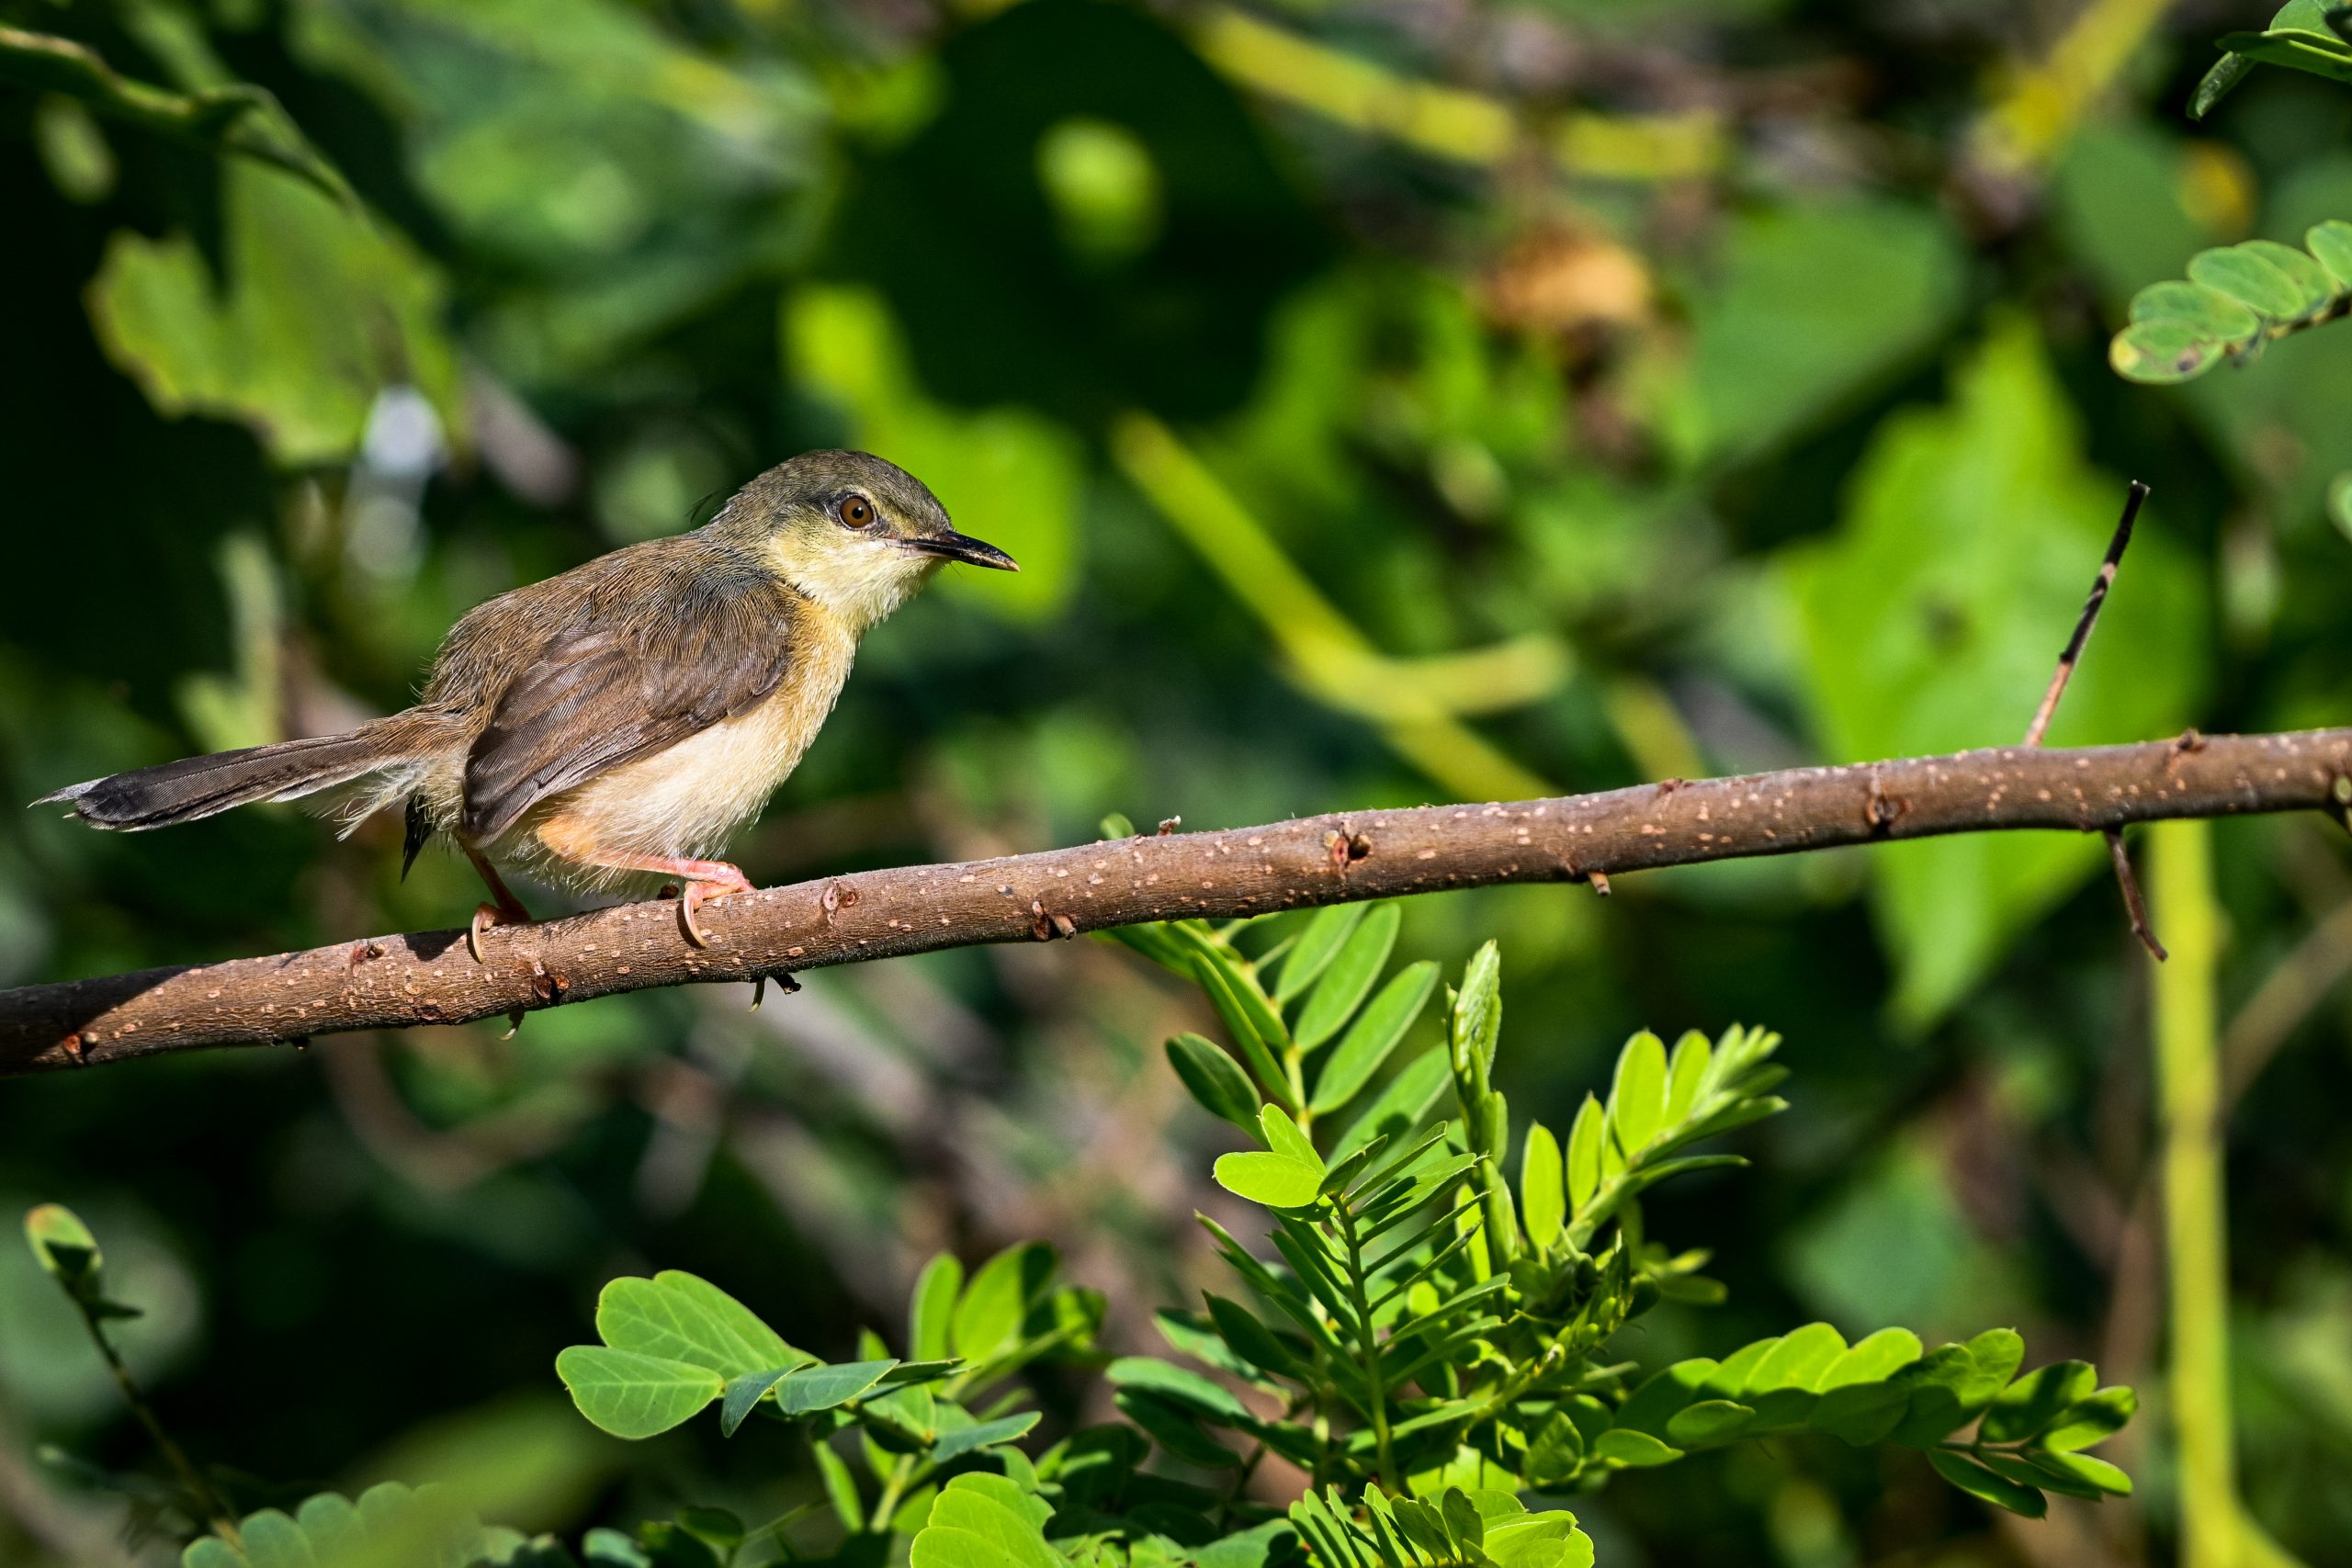 A sunbird on a twig